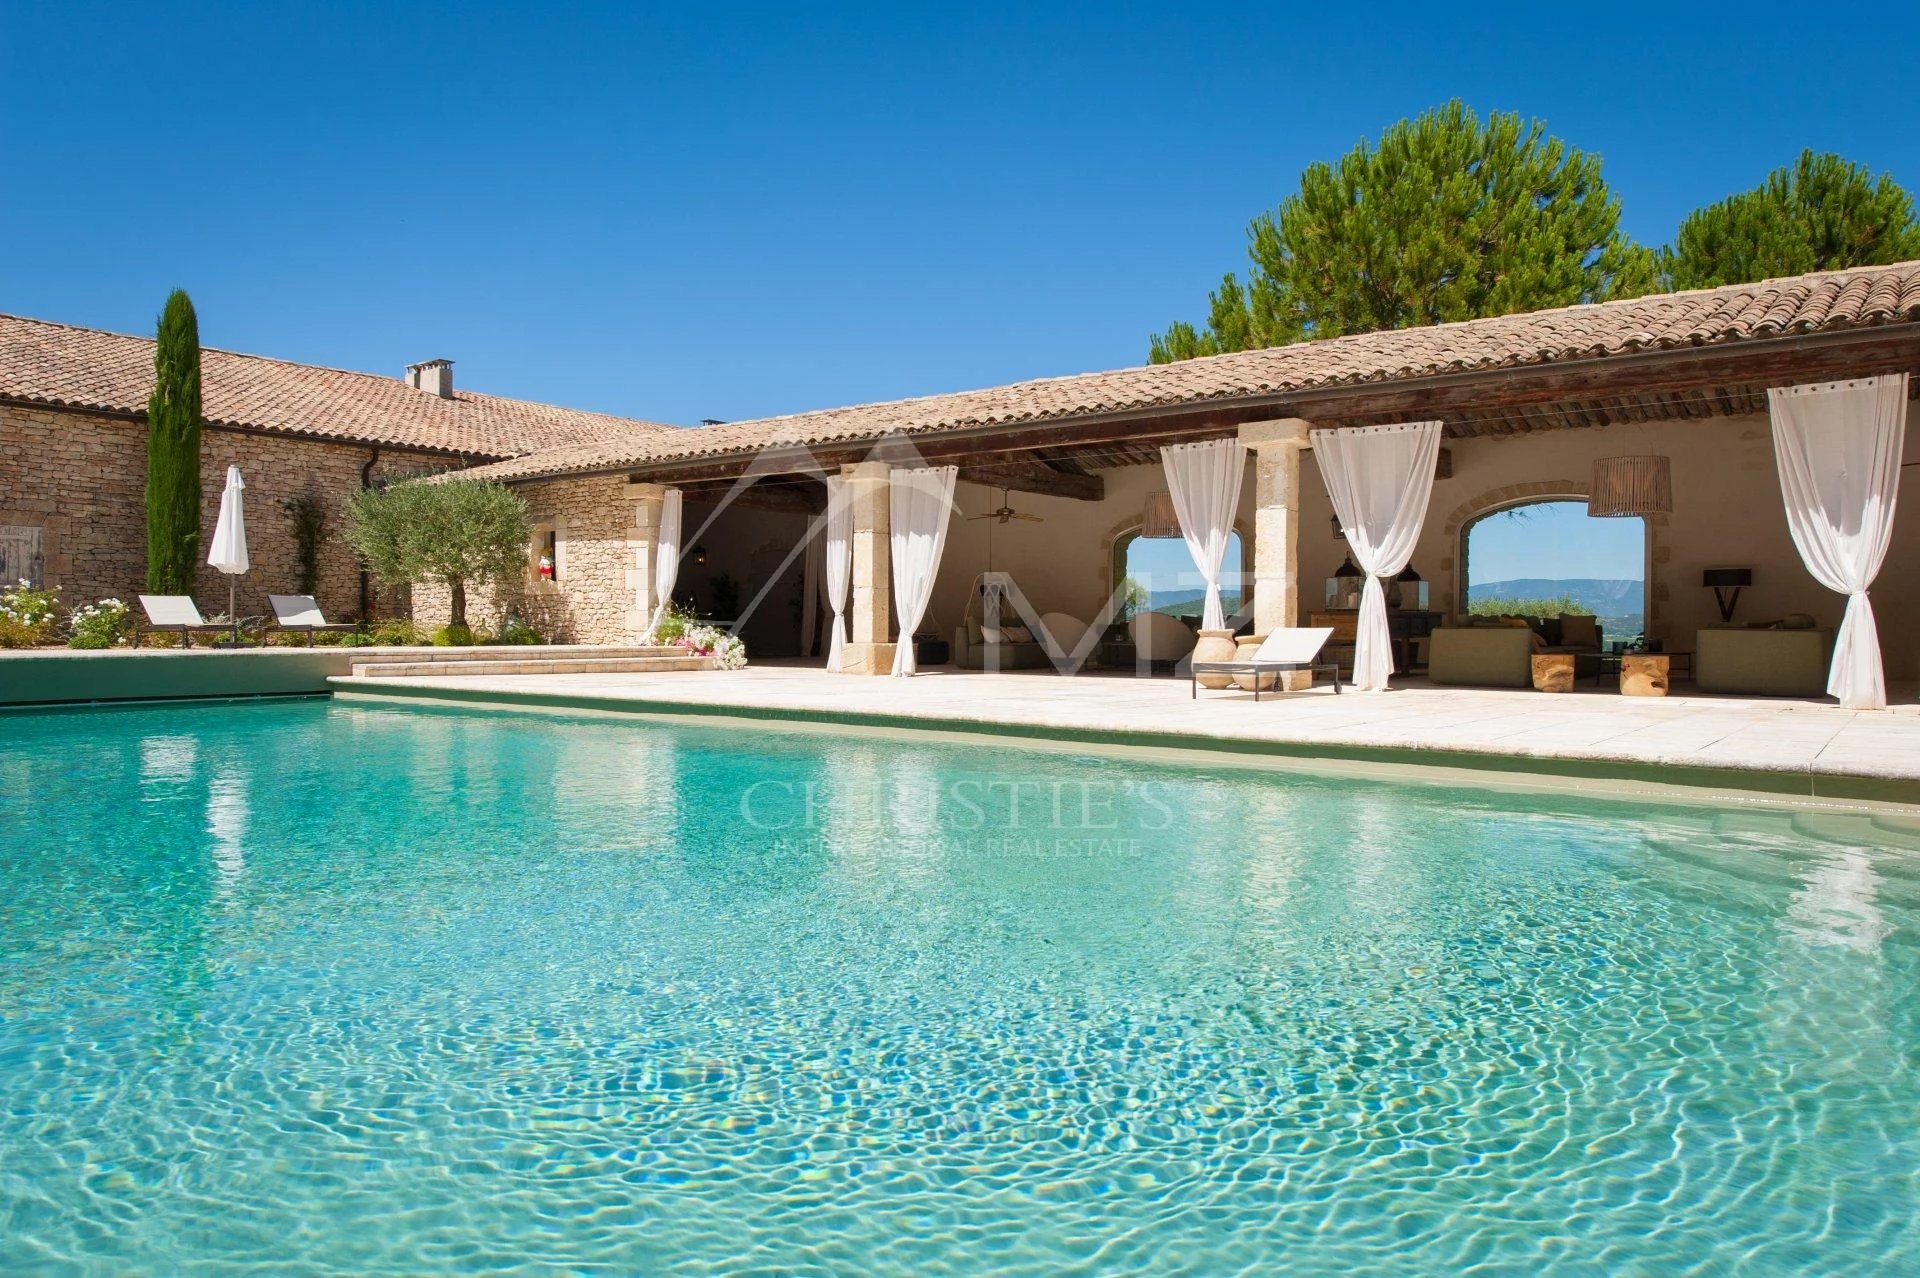 Luberon - Somptueux domaine avec tennis et piscine chauffée